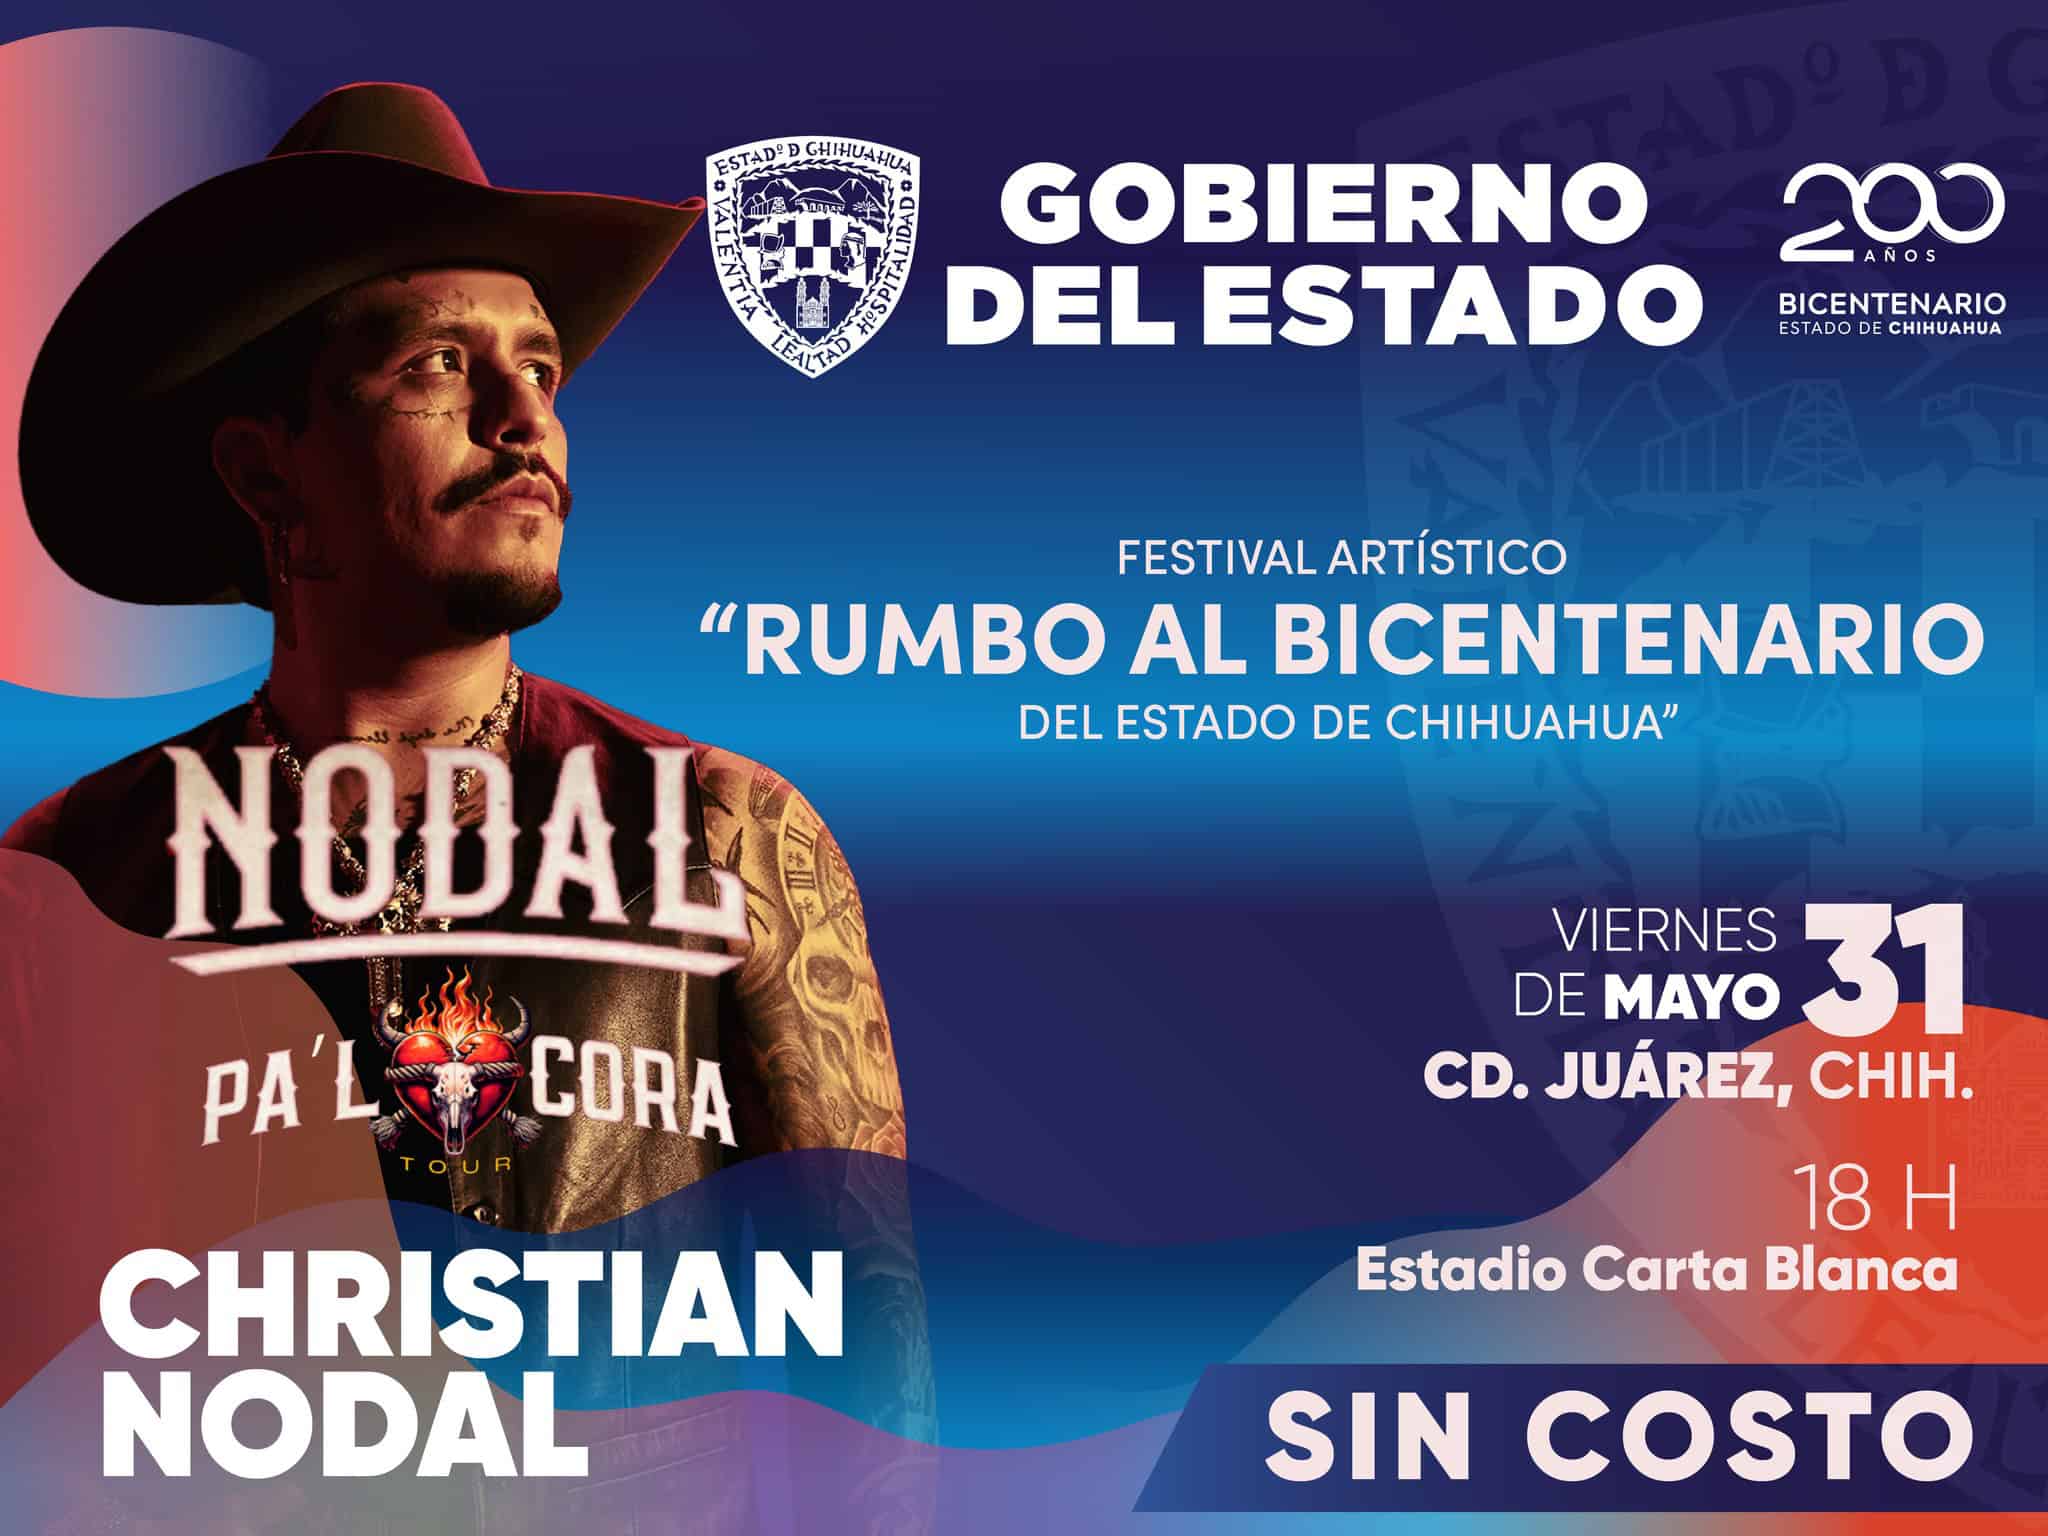 Invitan a la población en general al concierto gratis de Christian Nodal en Ciudad Juárez.